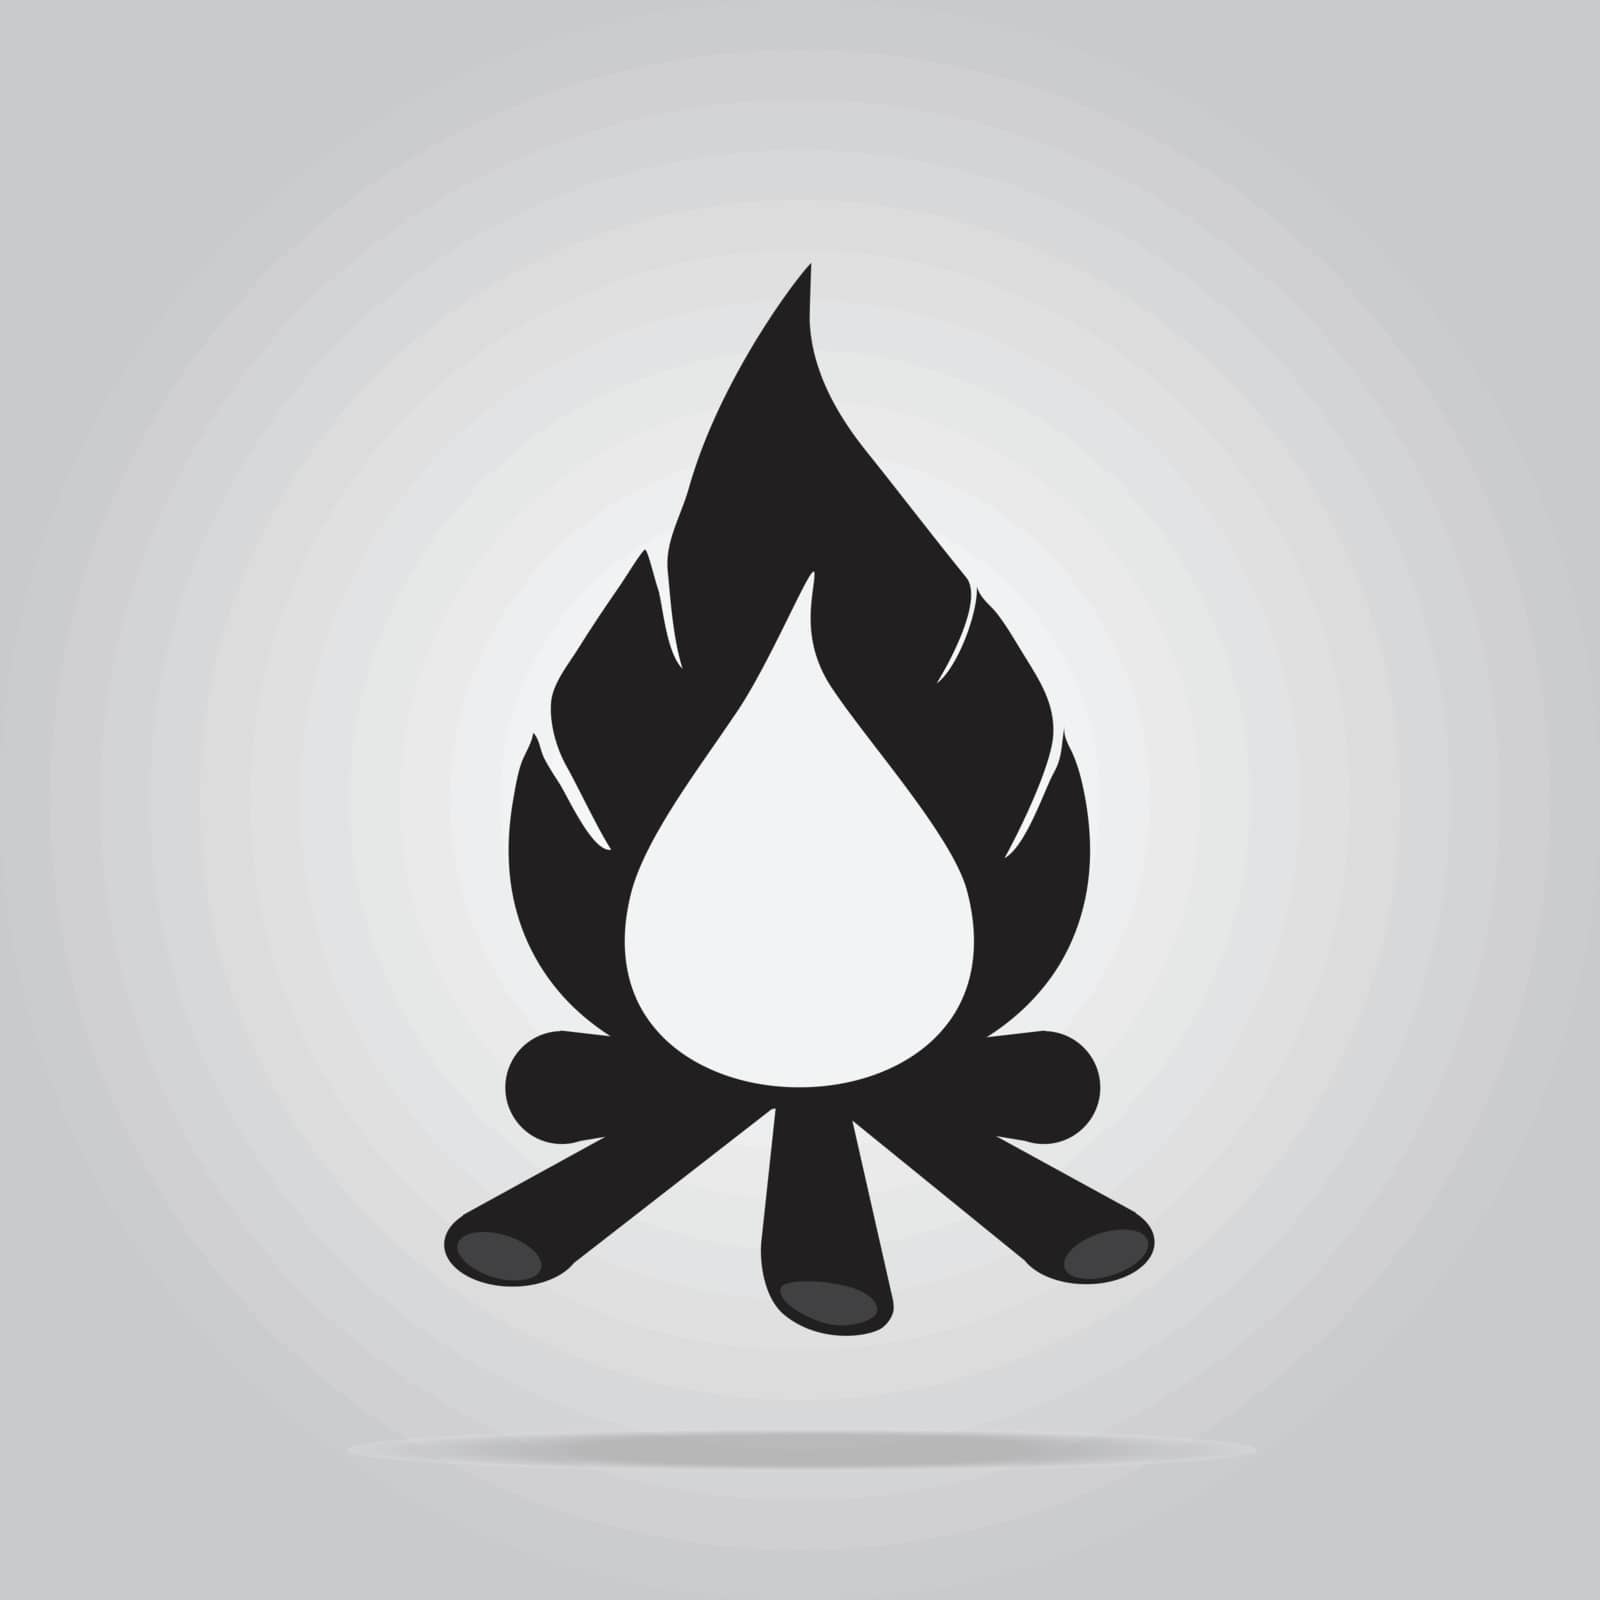 Bonfire icon by Kheat